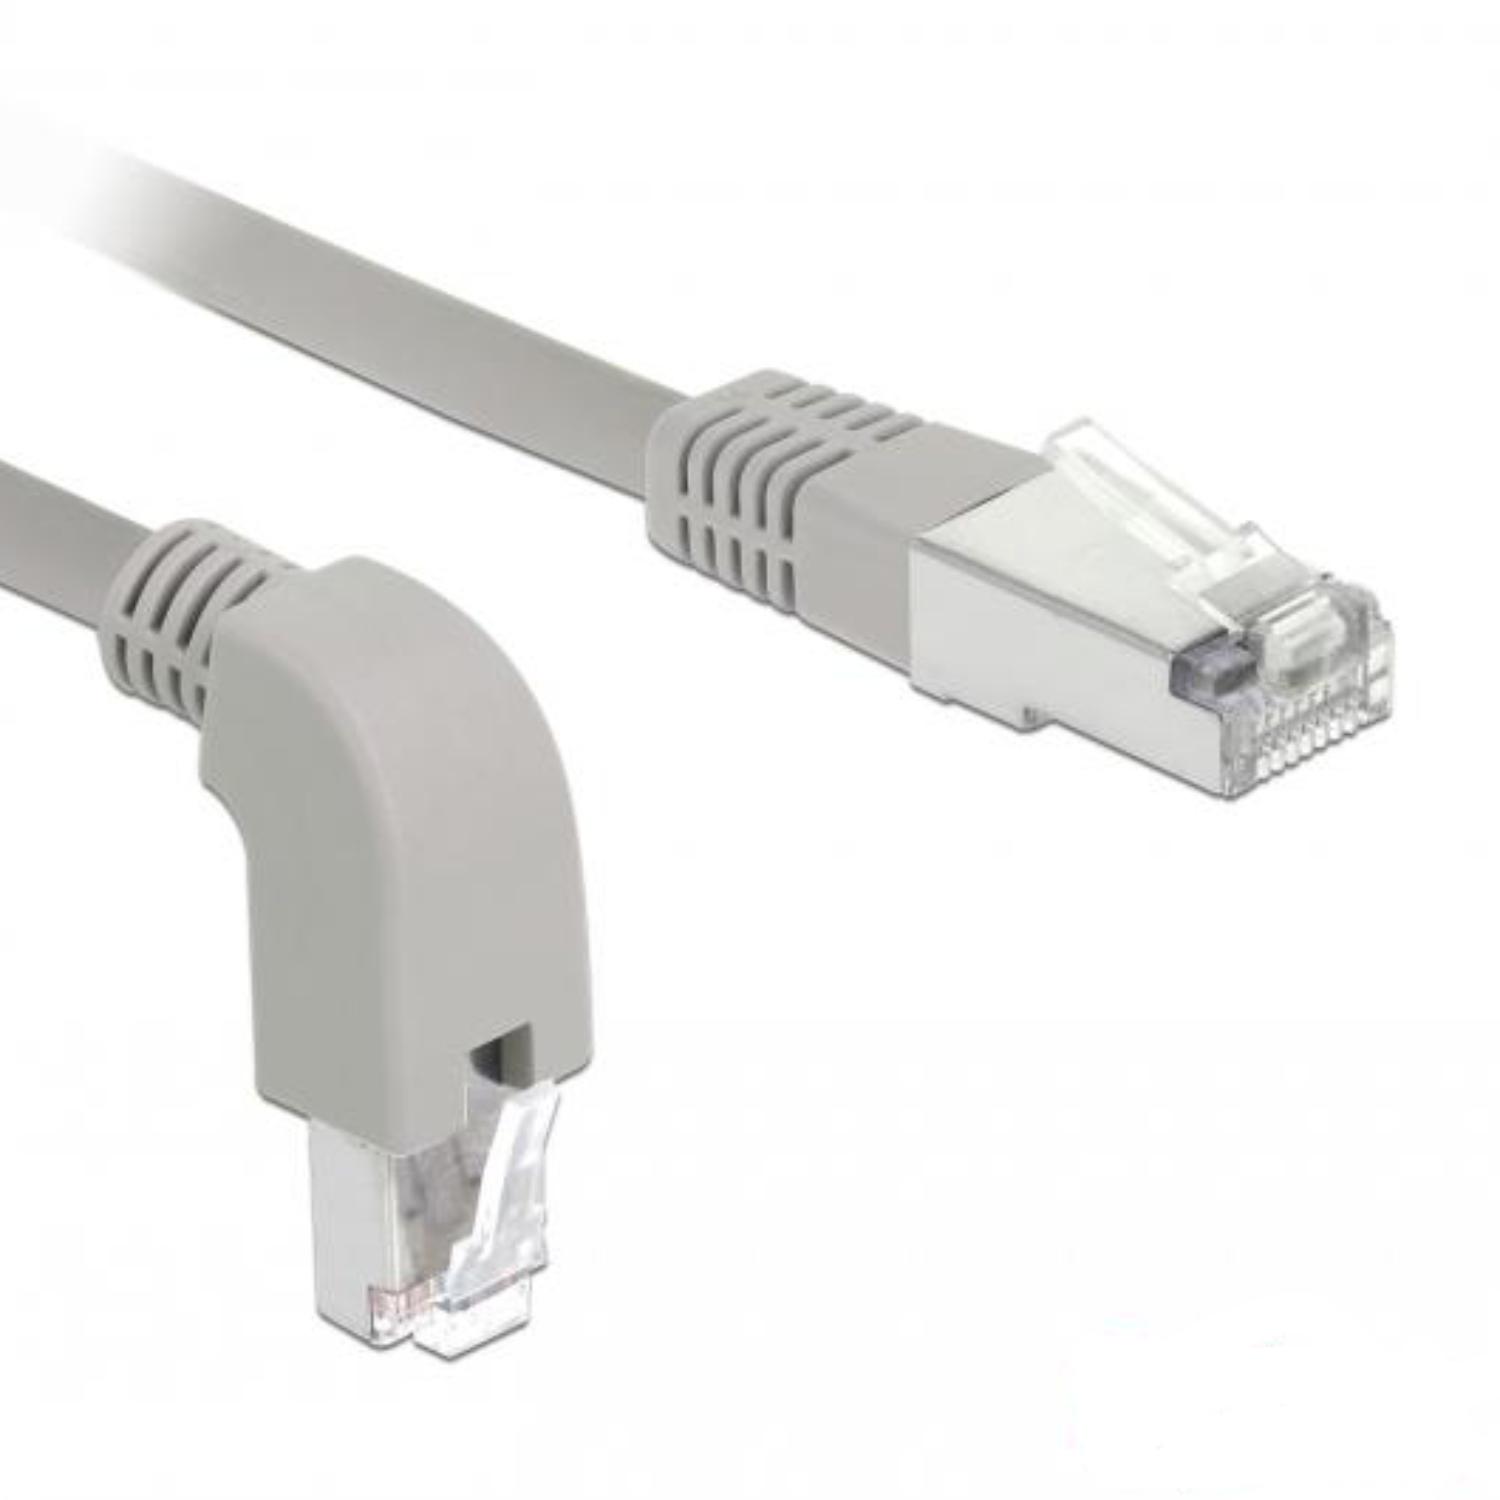 S/FTP kabel - 0.5 meter - Grijs - Delock